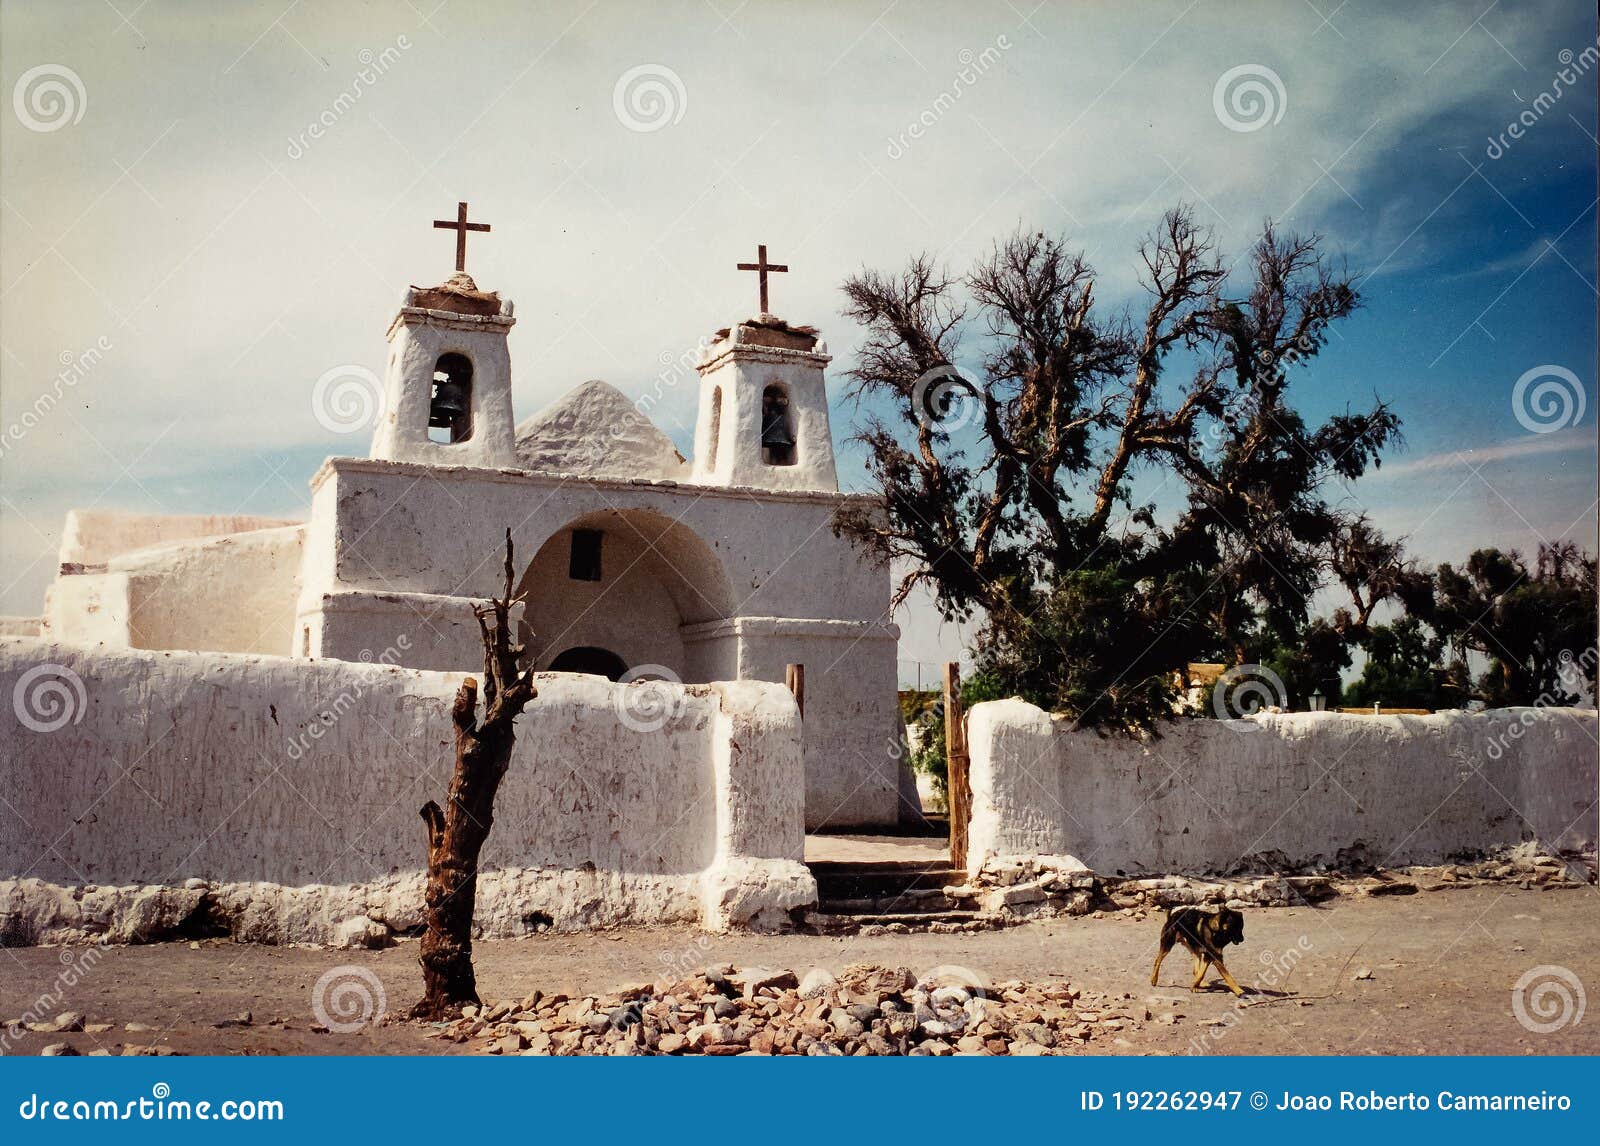 Impresionante Iglesia Blanca En El Desierto De Atacama Chile Hecho De  Cactus Imagen de archivo - Imagen de crucifijo, espiritualidad: 192262947